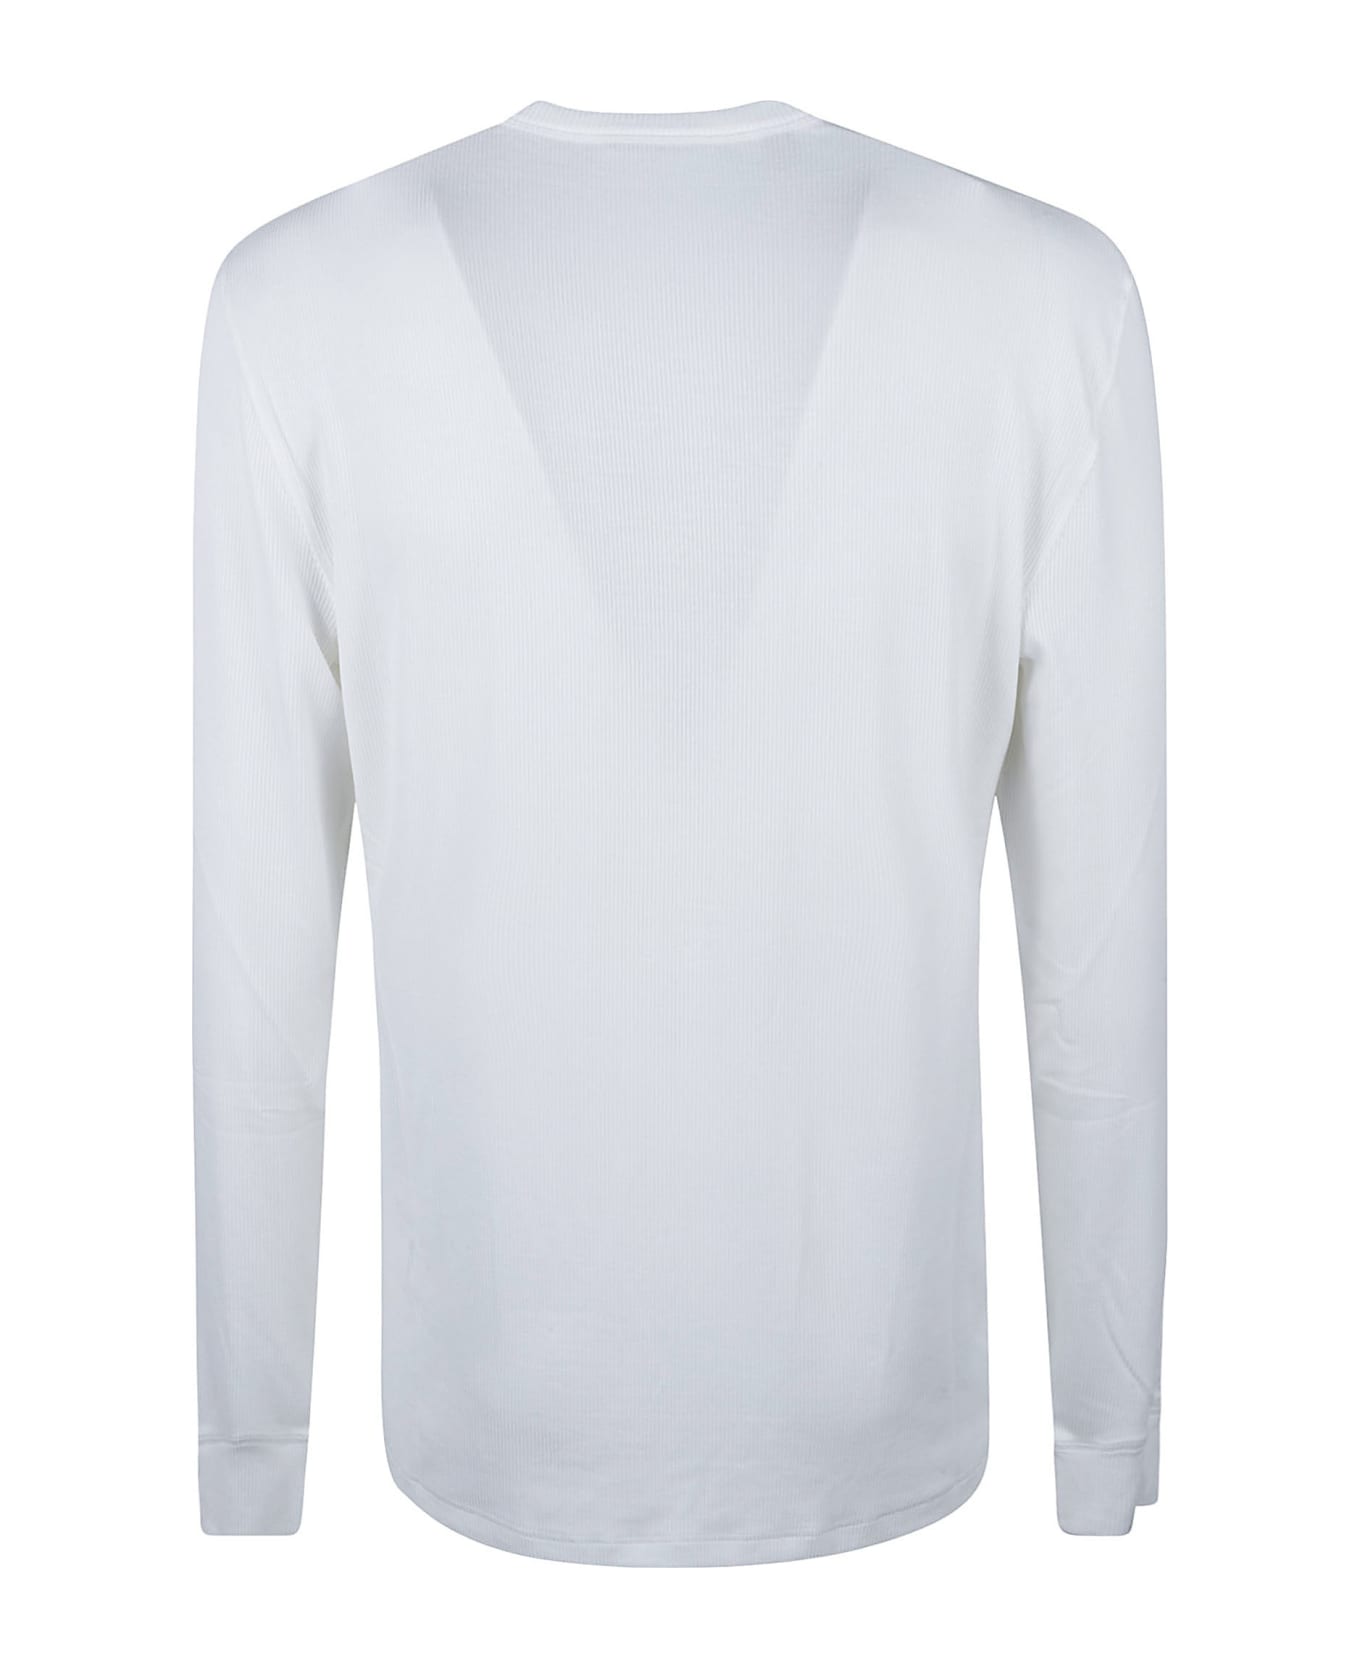 Tom Ford Long-sleeved T-shirt - White シャツ